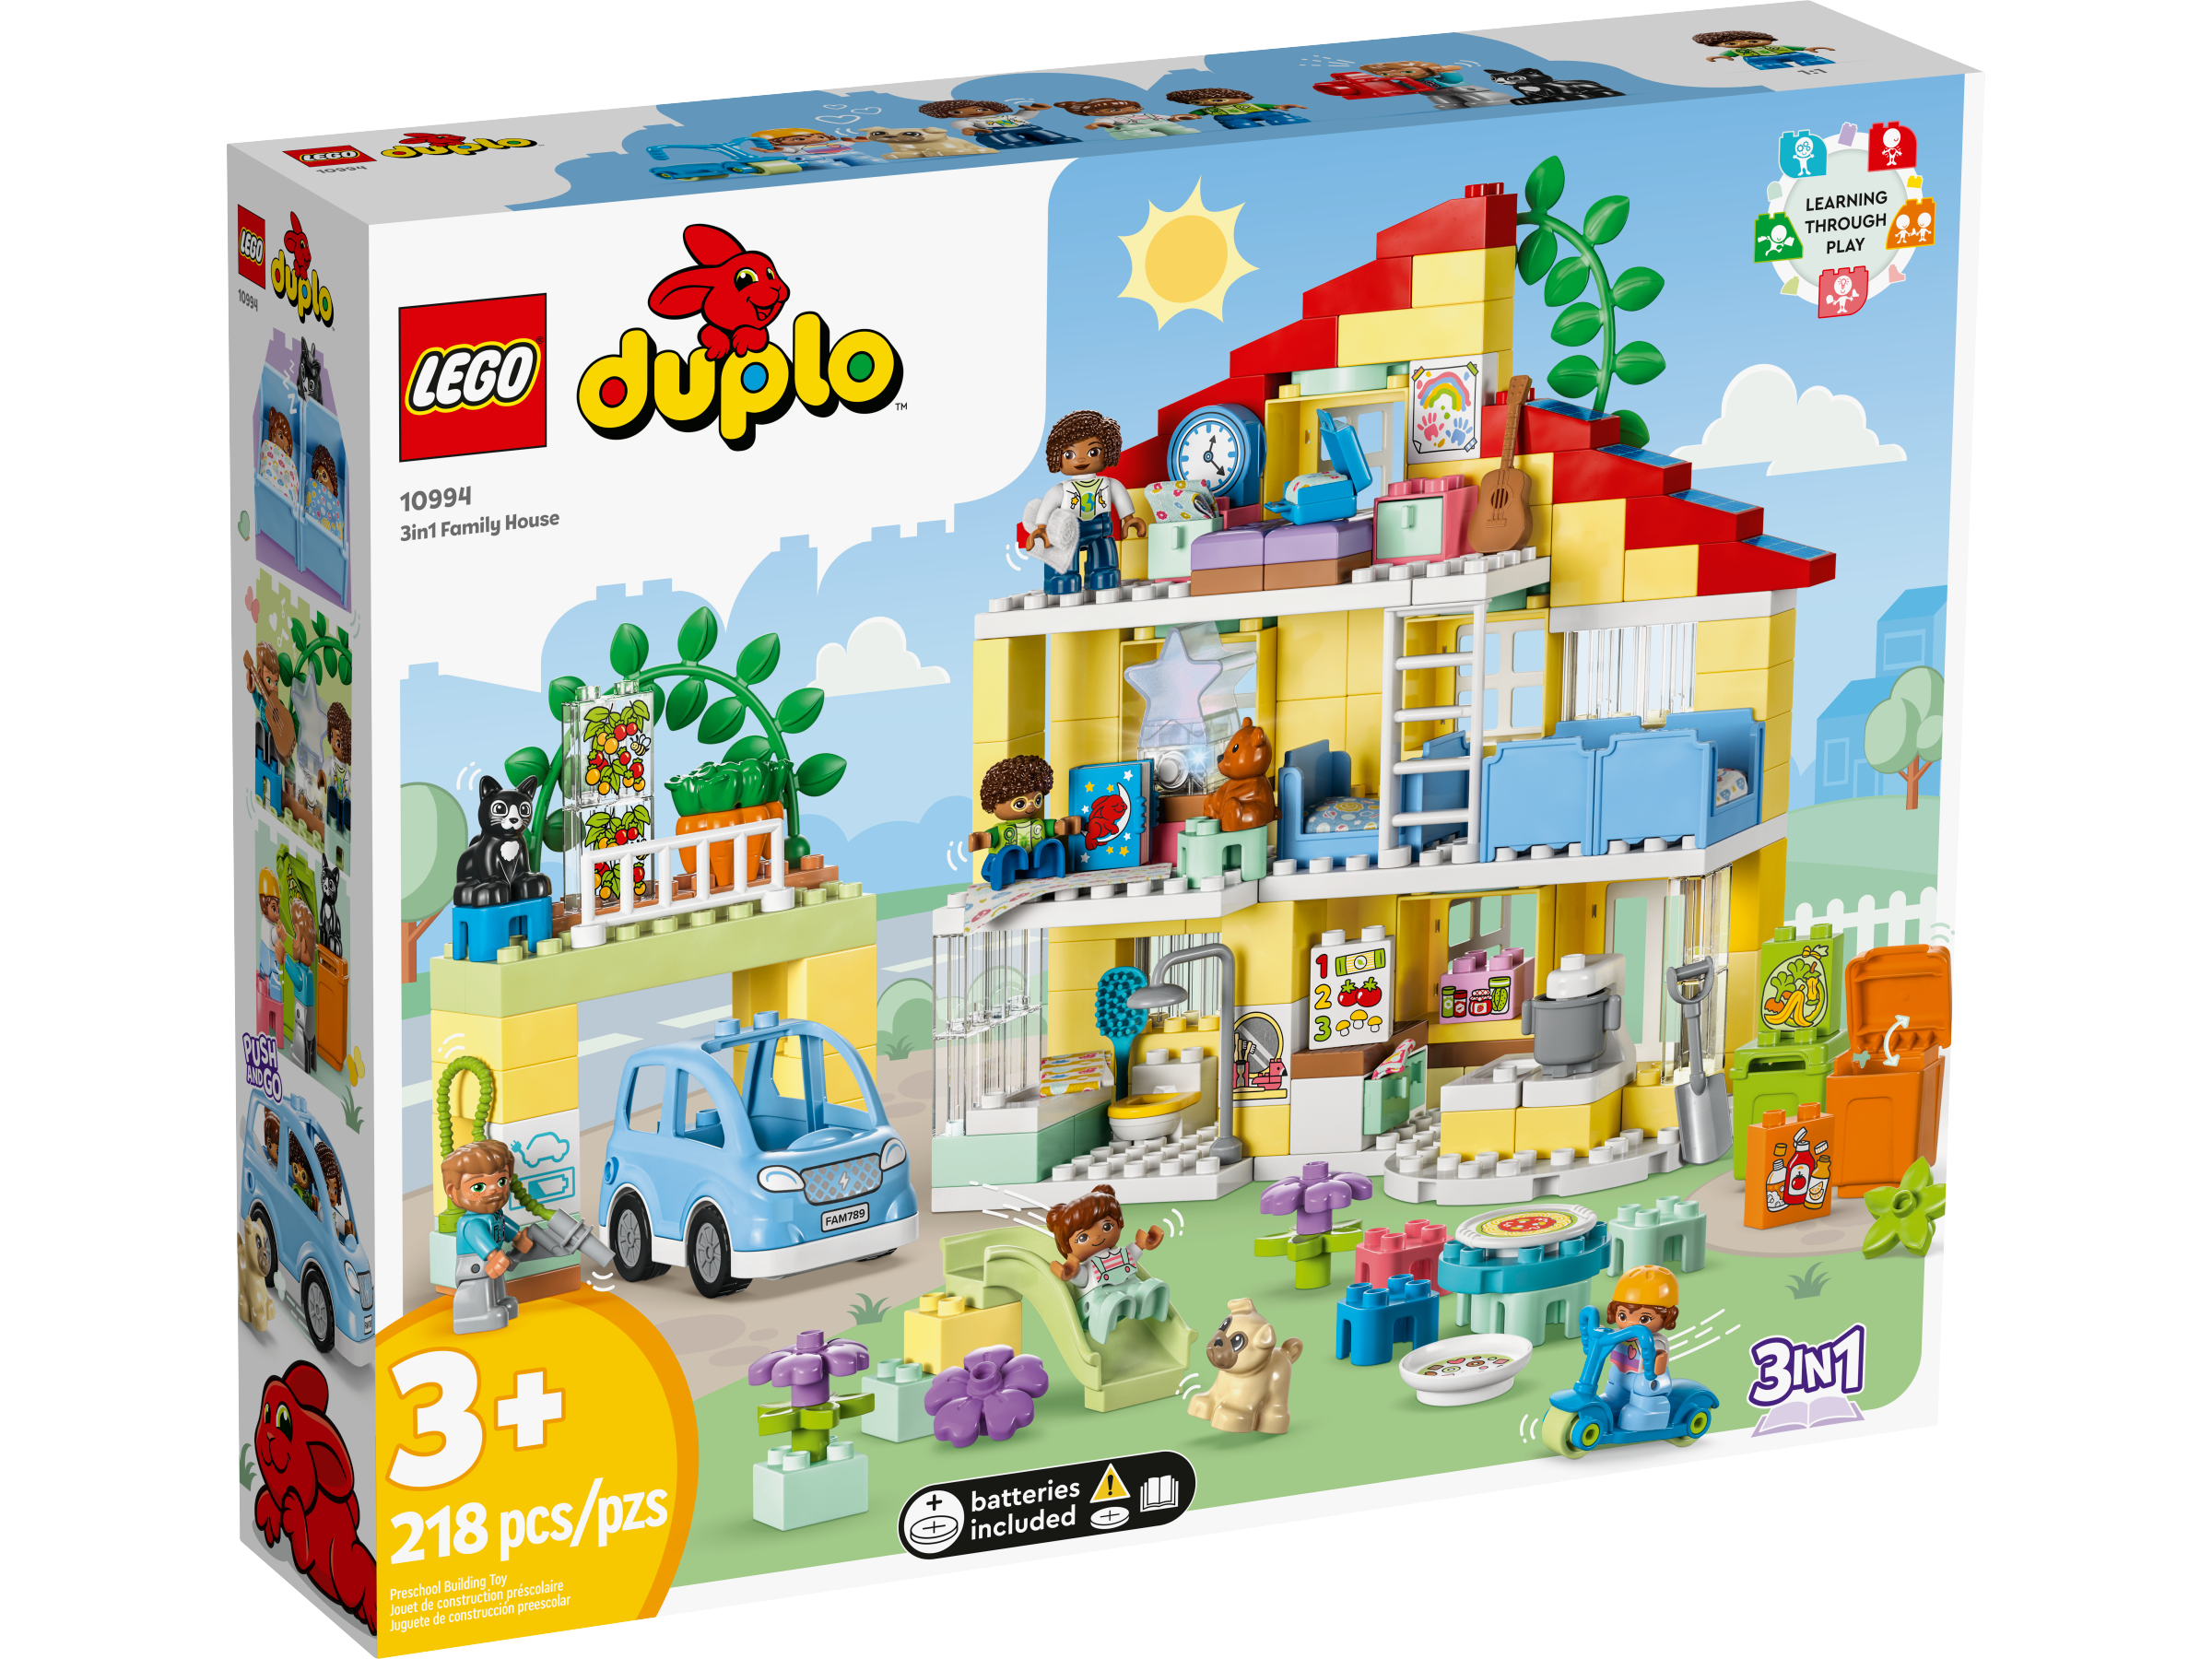  LEGO DUPLO Town 3 en 1 Family House 10994 - Juego de